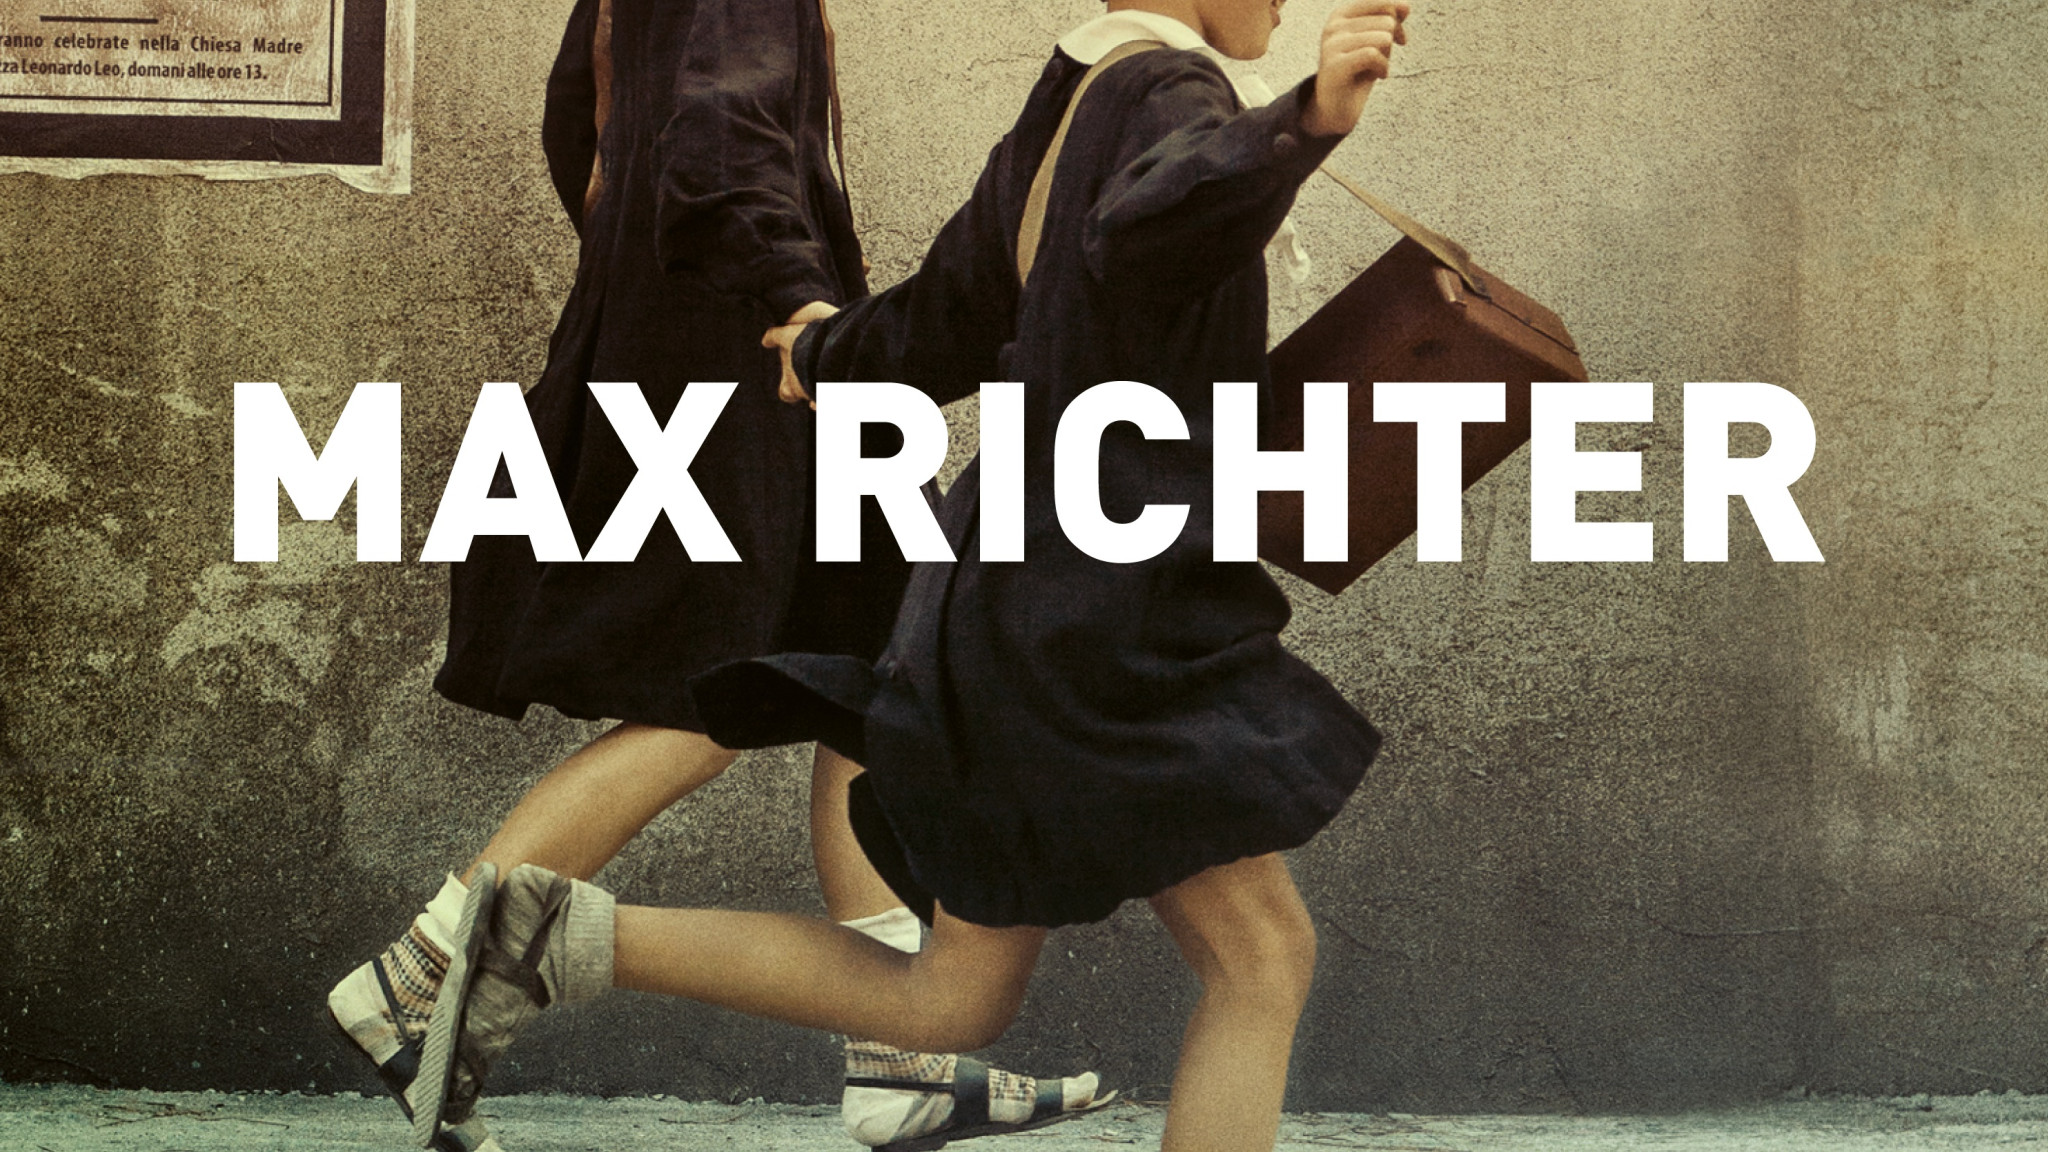 Max Richter - My Brilliant Friend